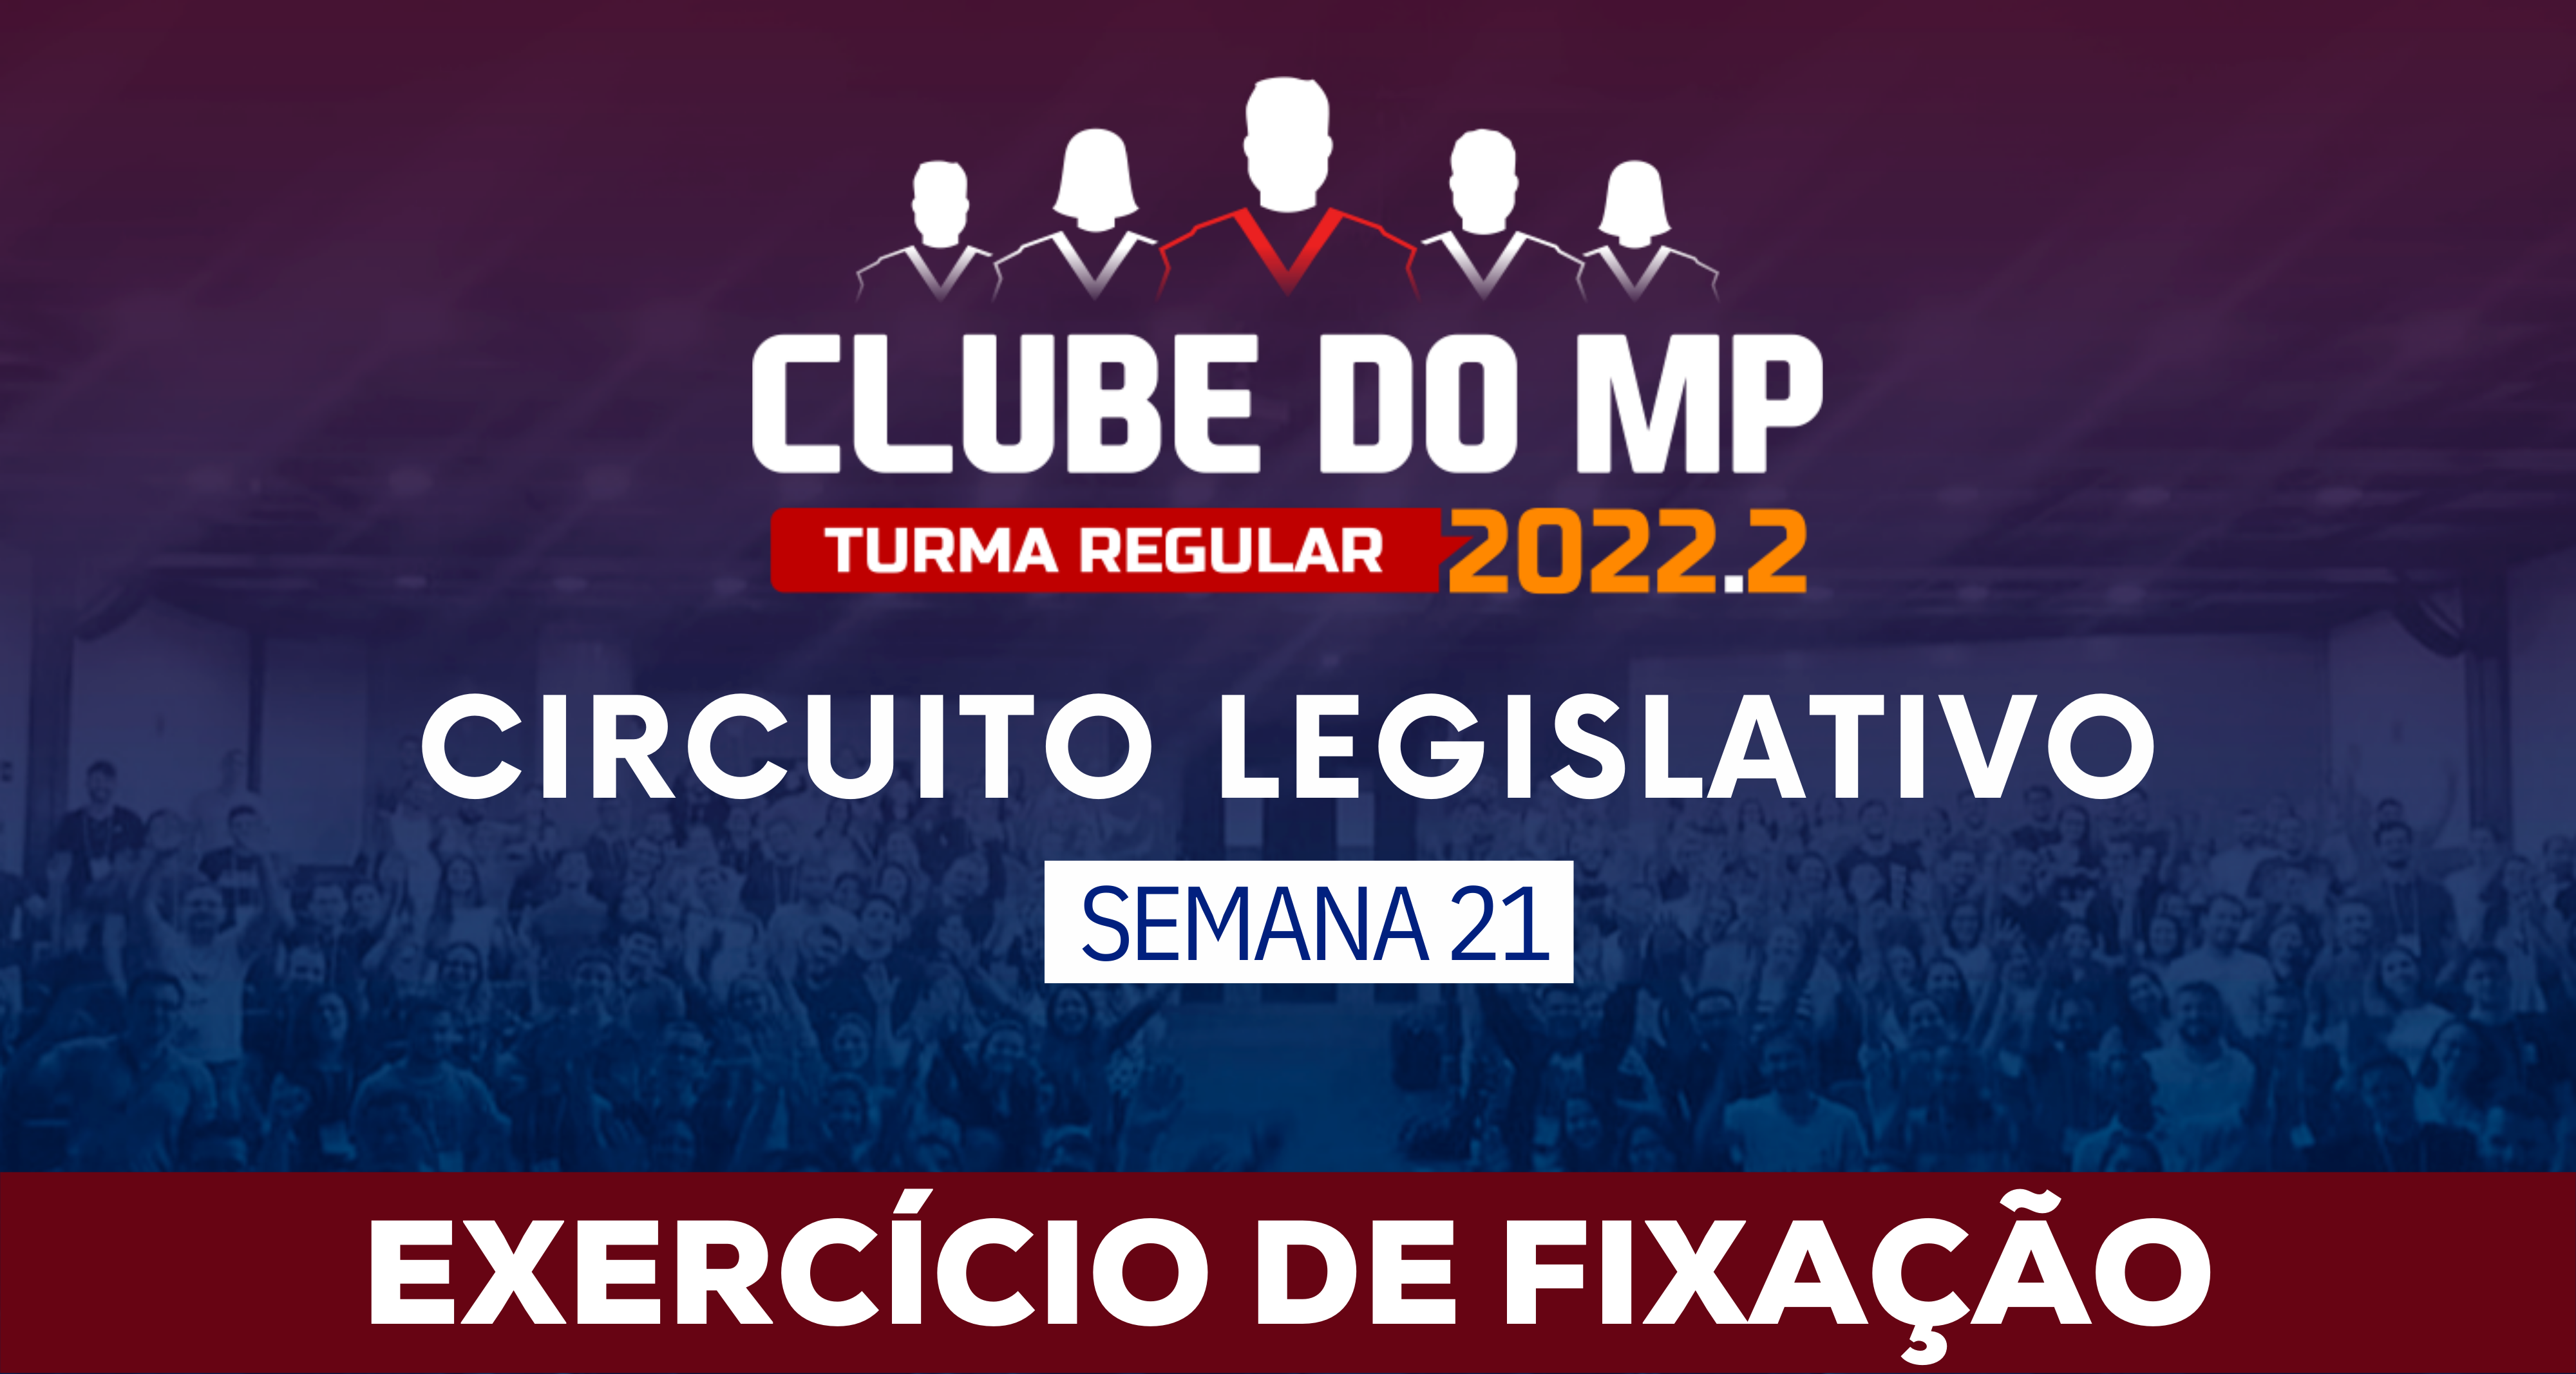 Circuito Legislativo 2022.2 (Clube do MP - Semana 21)